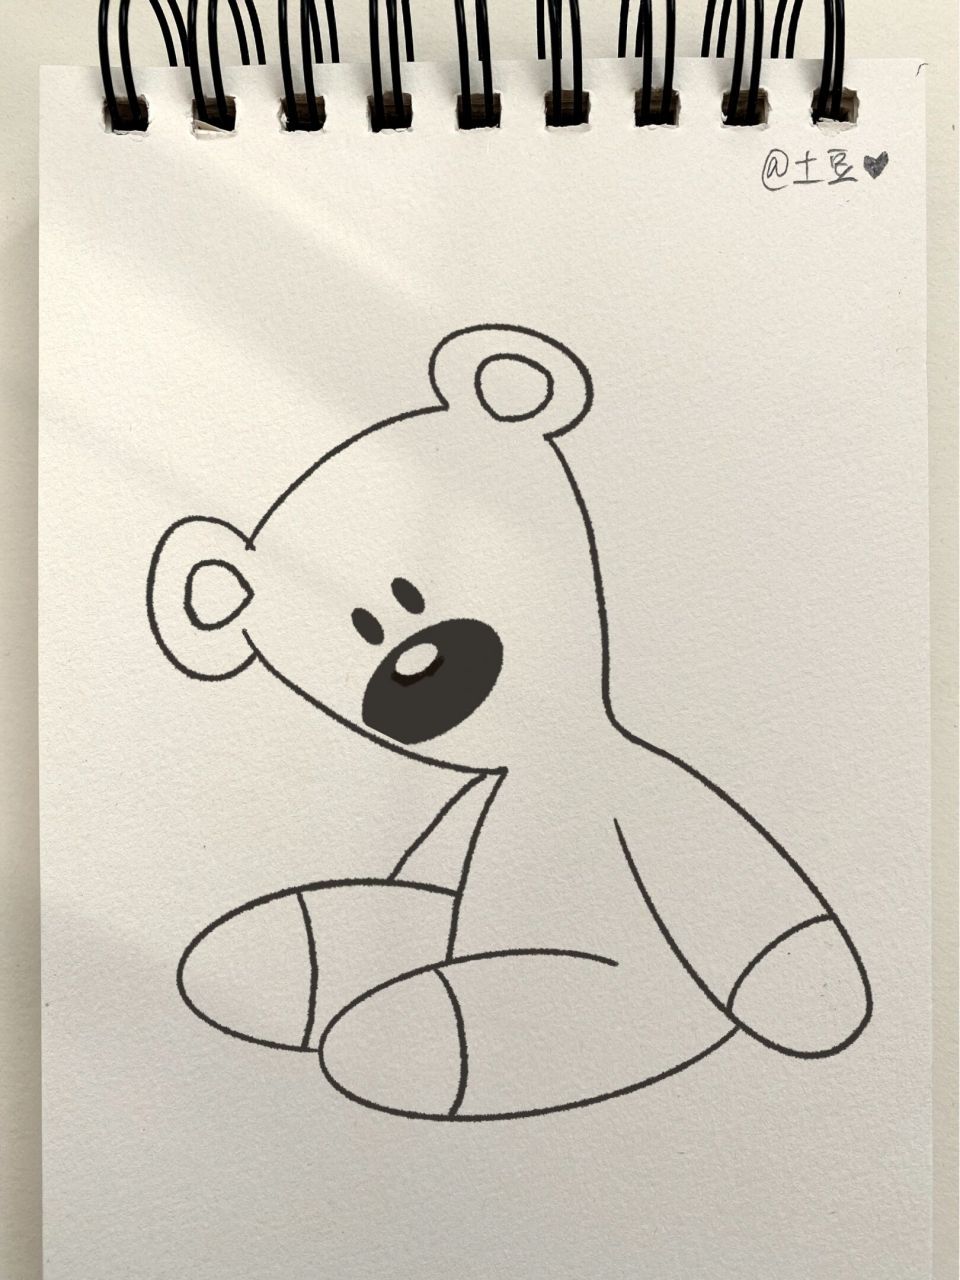 玩具熊简笔画 画法图片